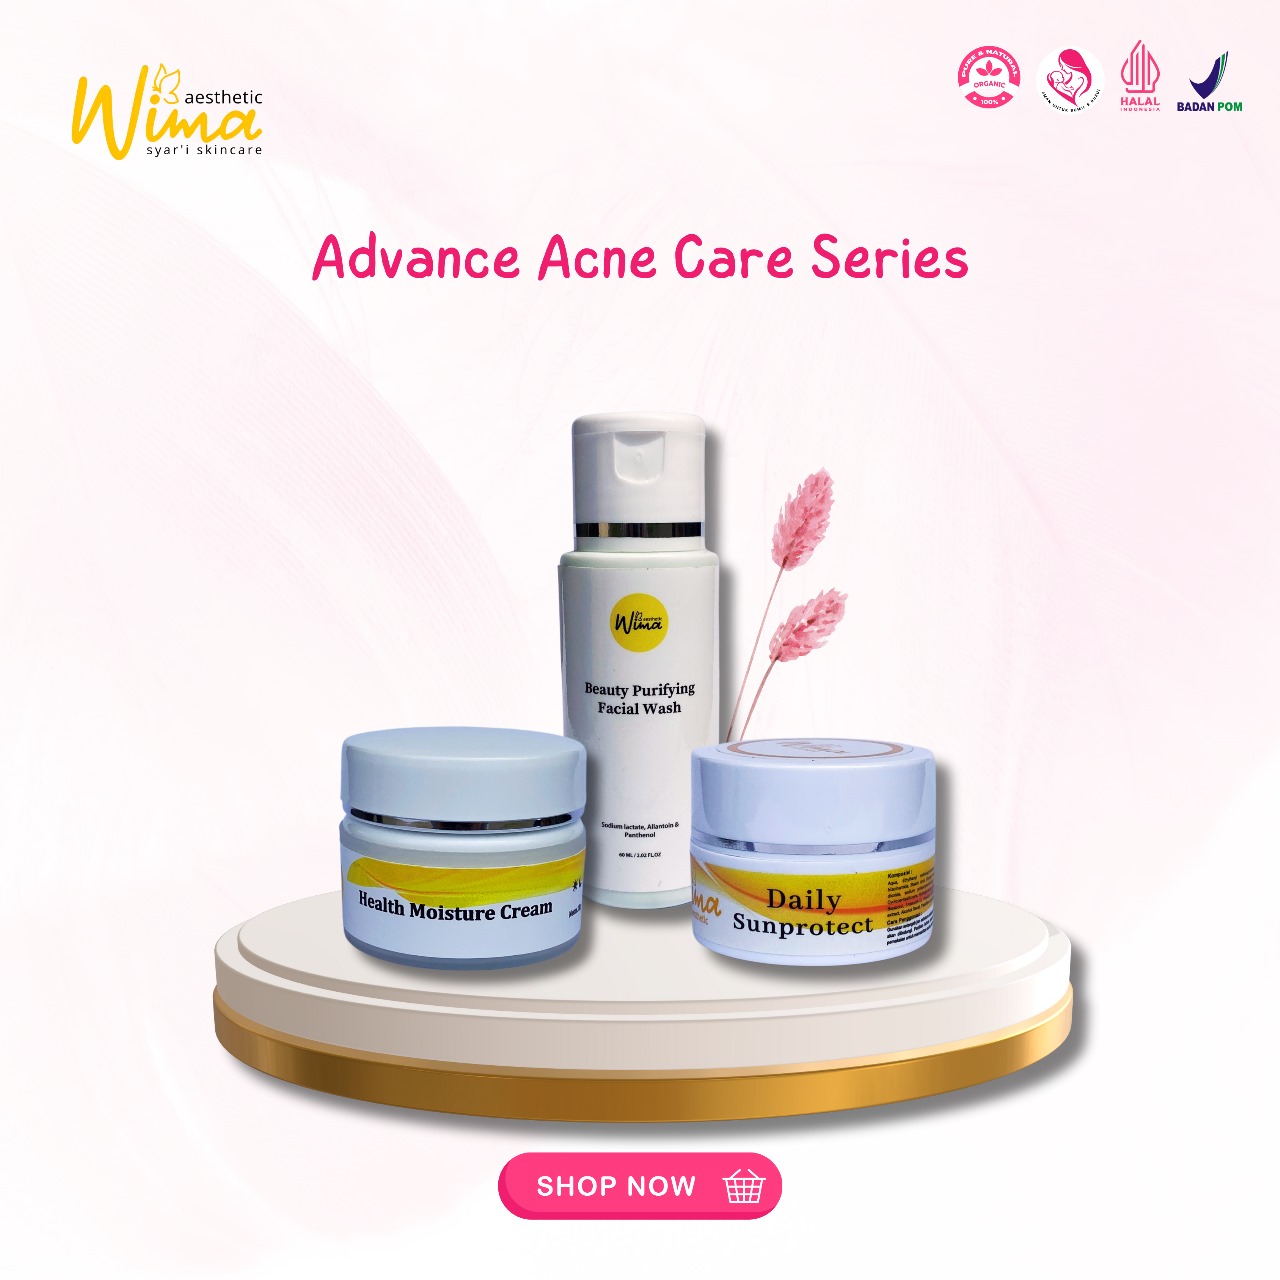 Wima Advance Acne Care Series